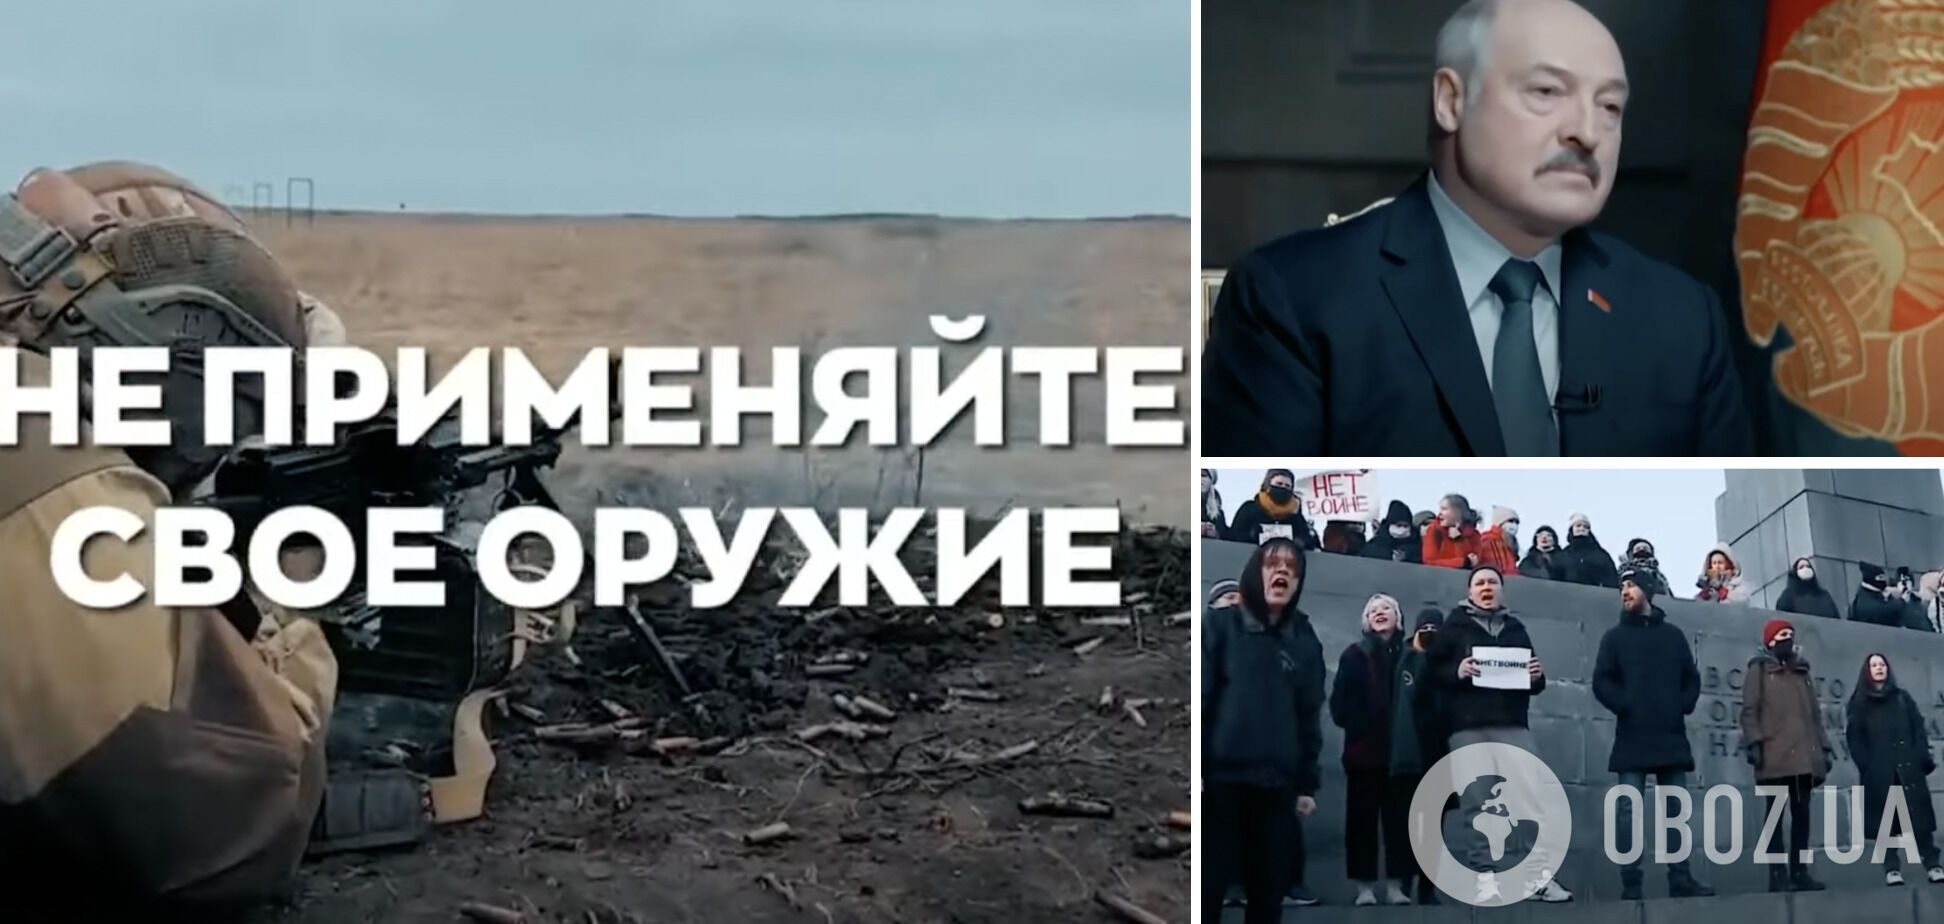 "Если вы присоединитесь к нападению, мы ответим жестко": в ВСУ призвали белорусов не вступать в войну против Украины. Видео